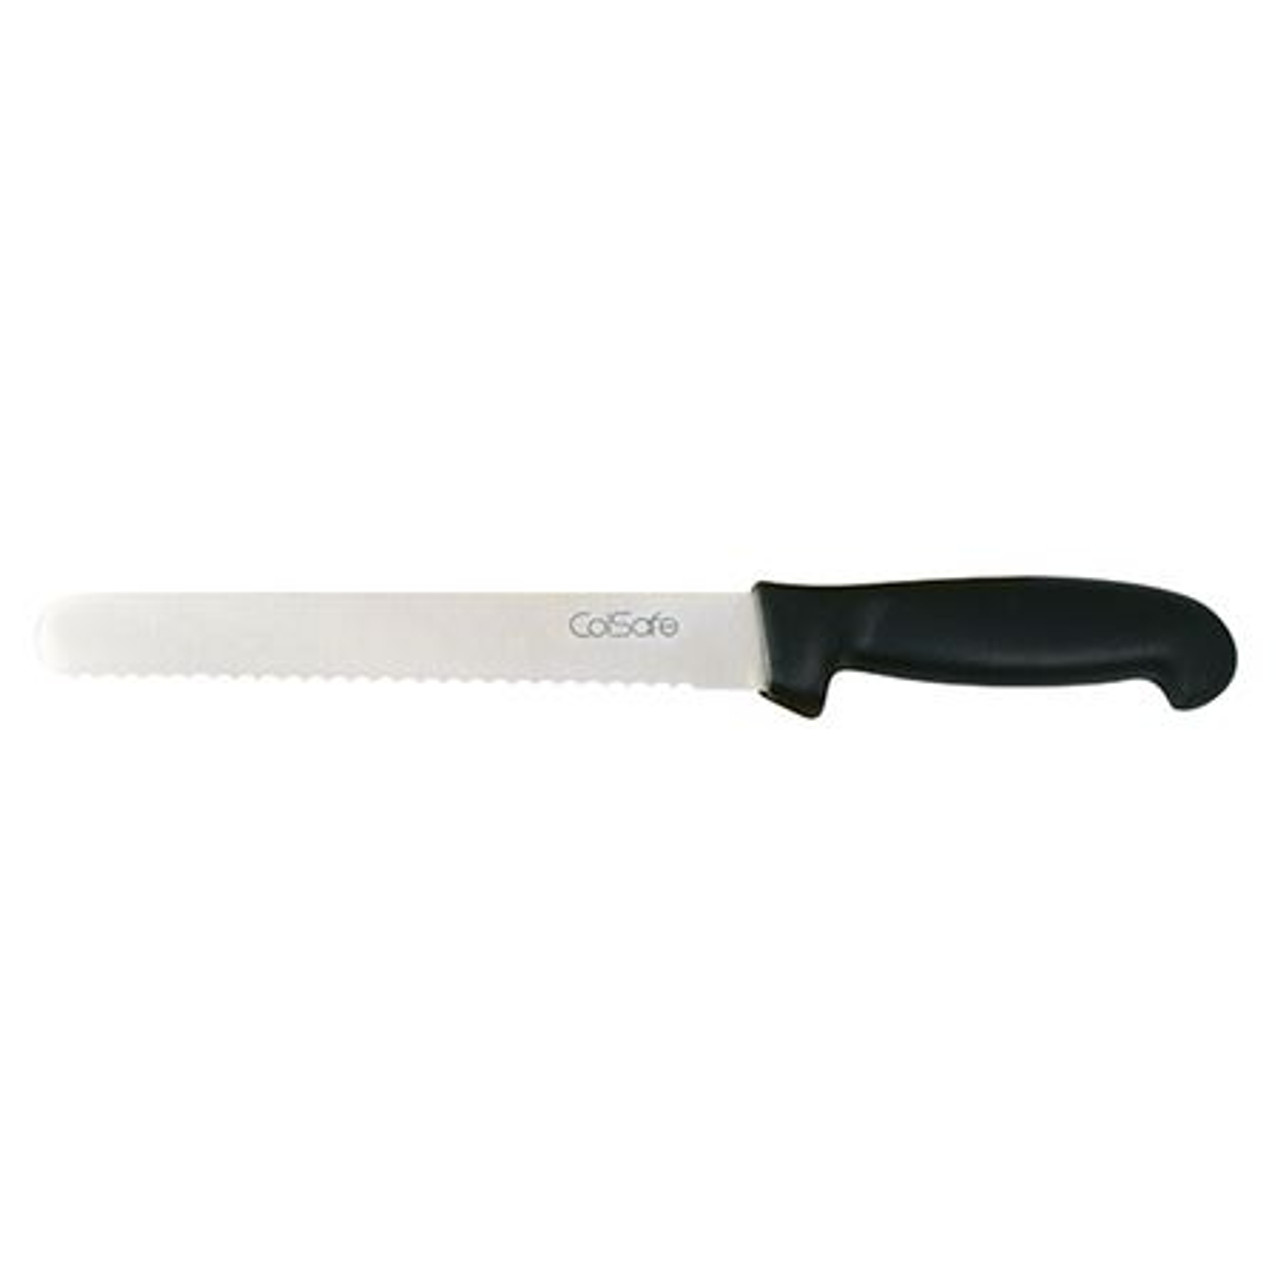 Colsafe Bread Knife 8" Black